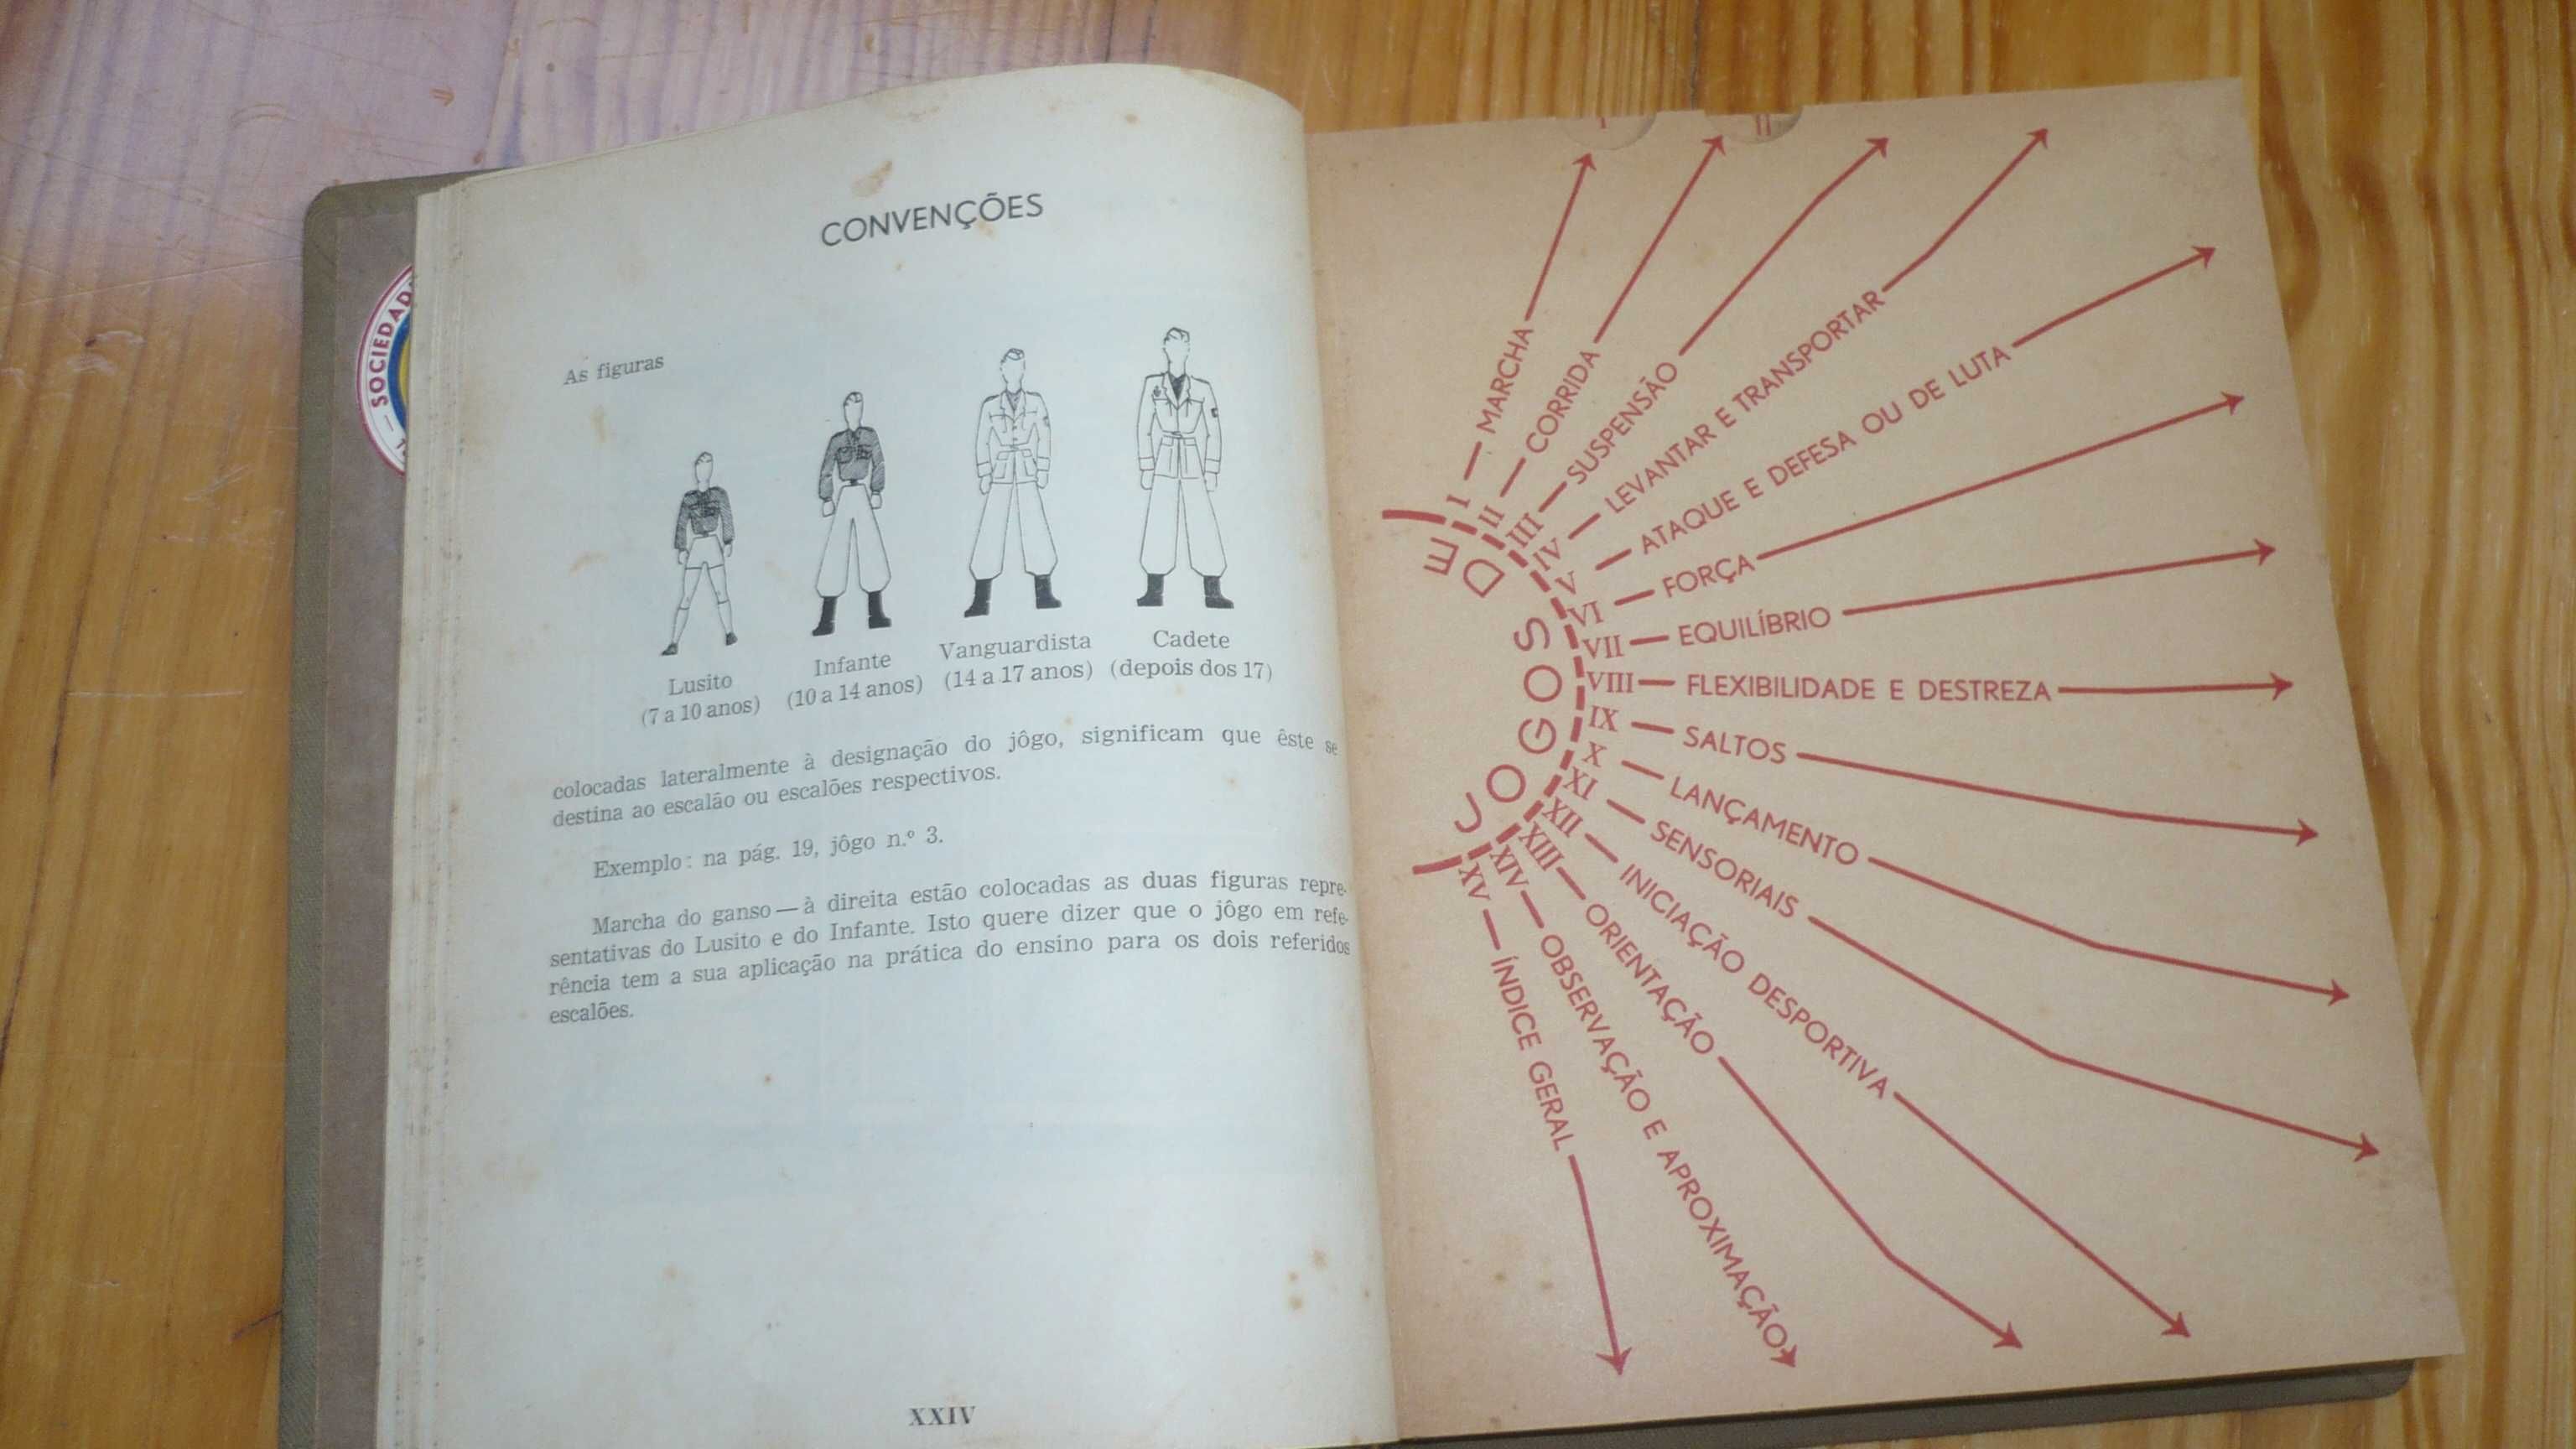 Manual de jogos da Mocidade portuguesa - 1942